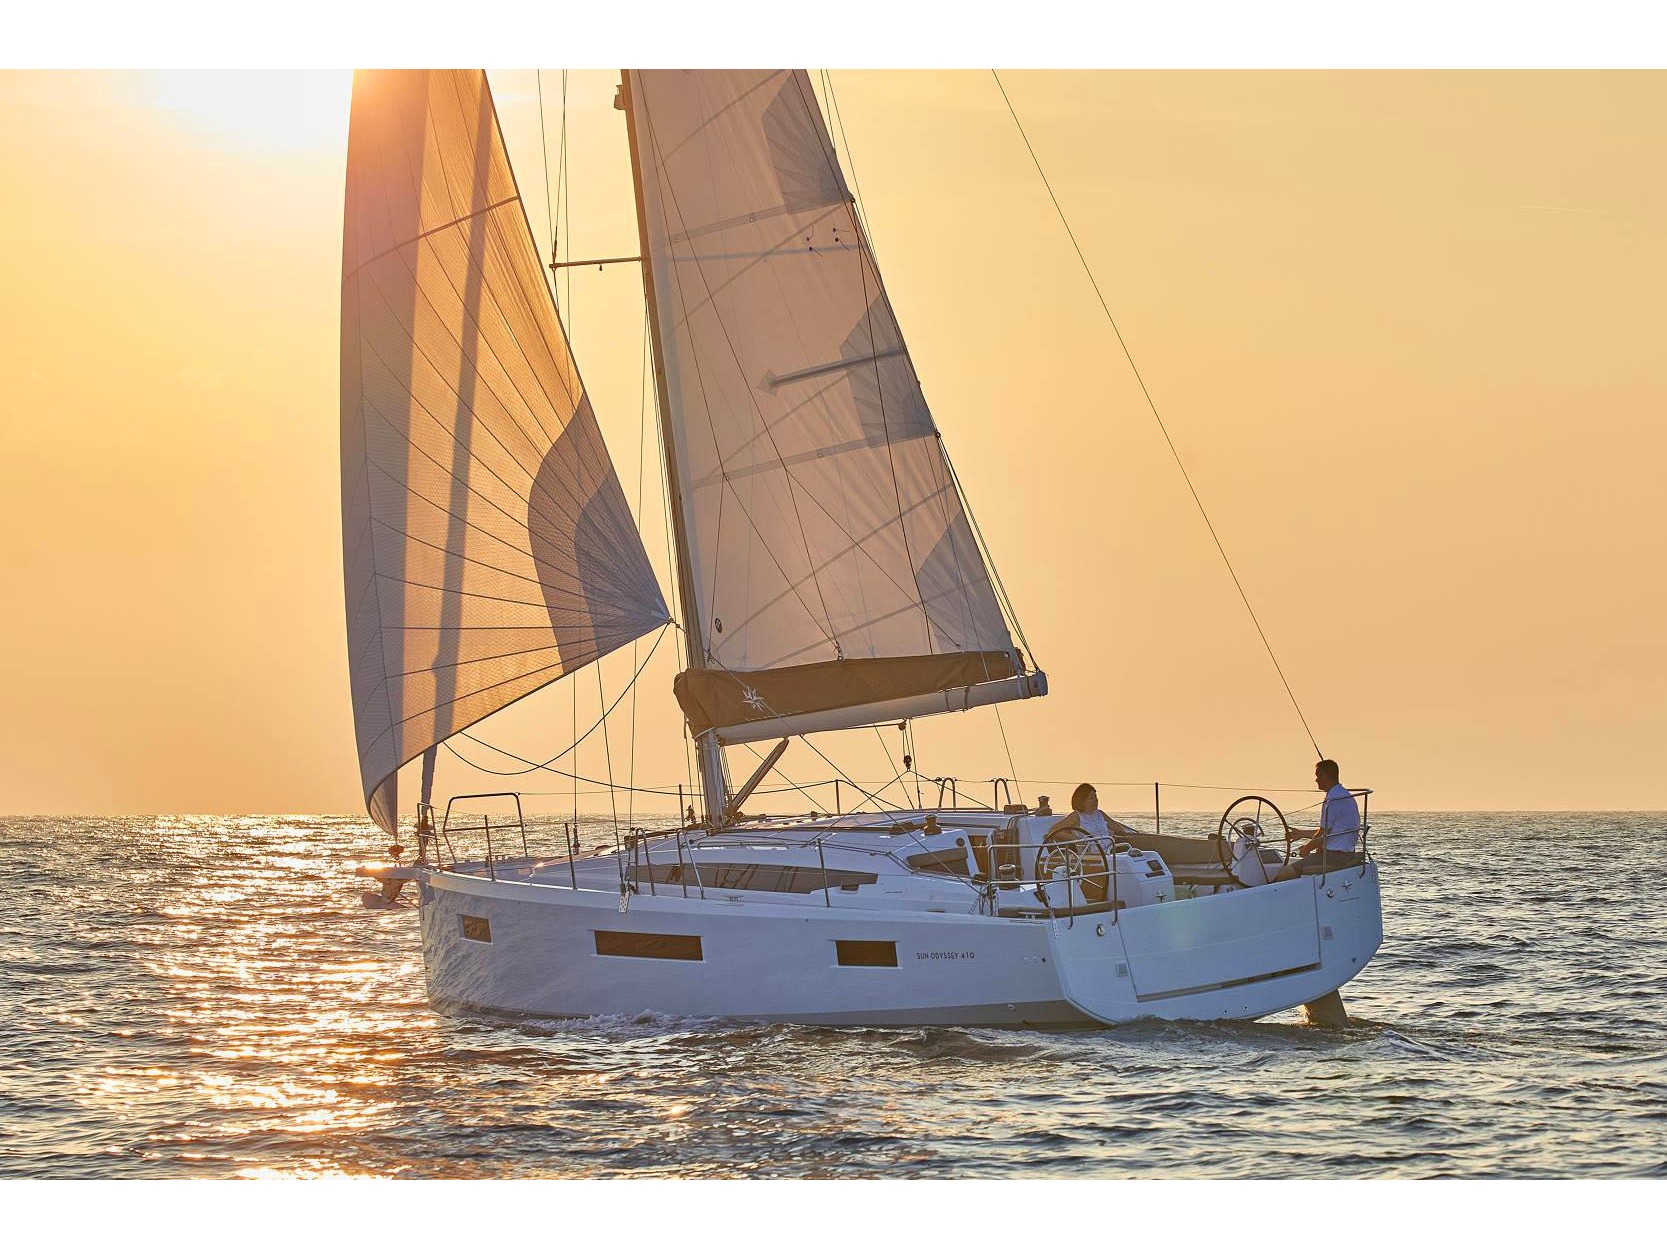 Sun Odyssey 410 - Yacht Charter Orhaniye & Boat hire in Turkey Turkish Riviera Carian Coast Orhaniye Marti Marina 2